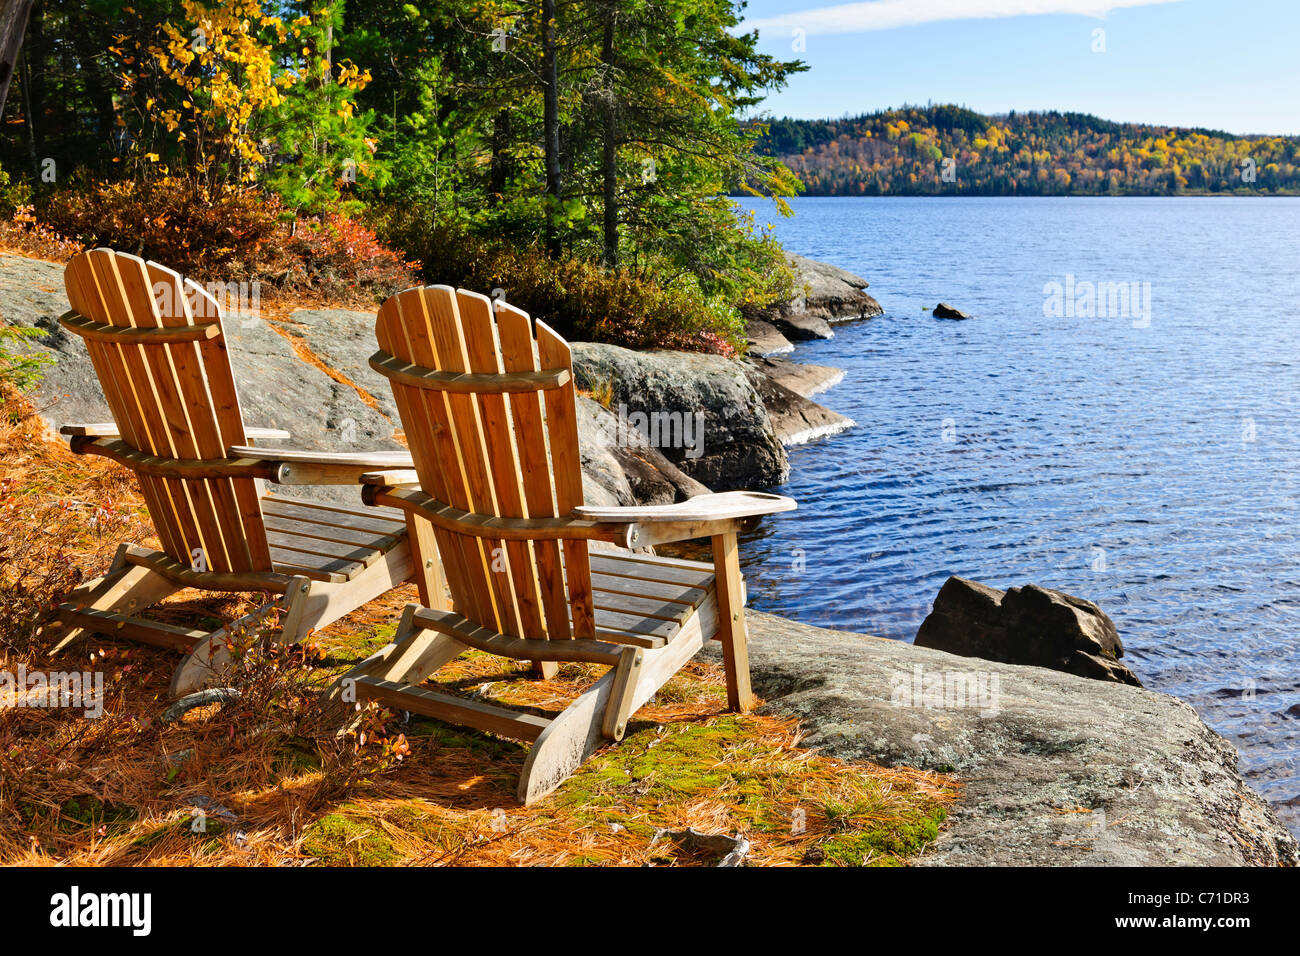 Chaises Adirondack au bord du lac des deux fleuves, l'Ontario, Canada Banque D'Images